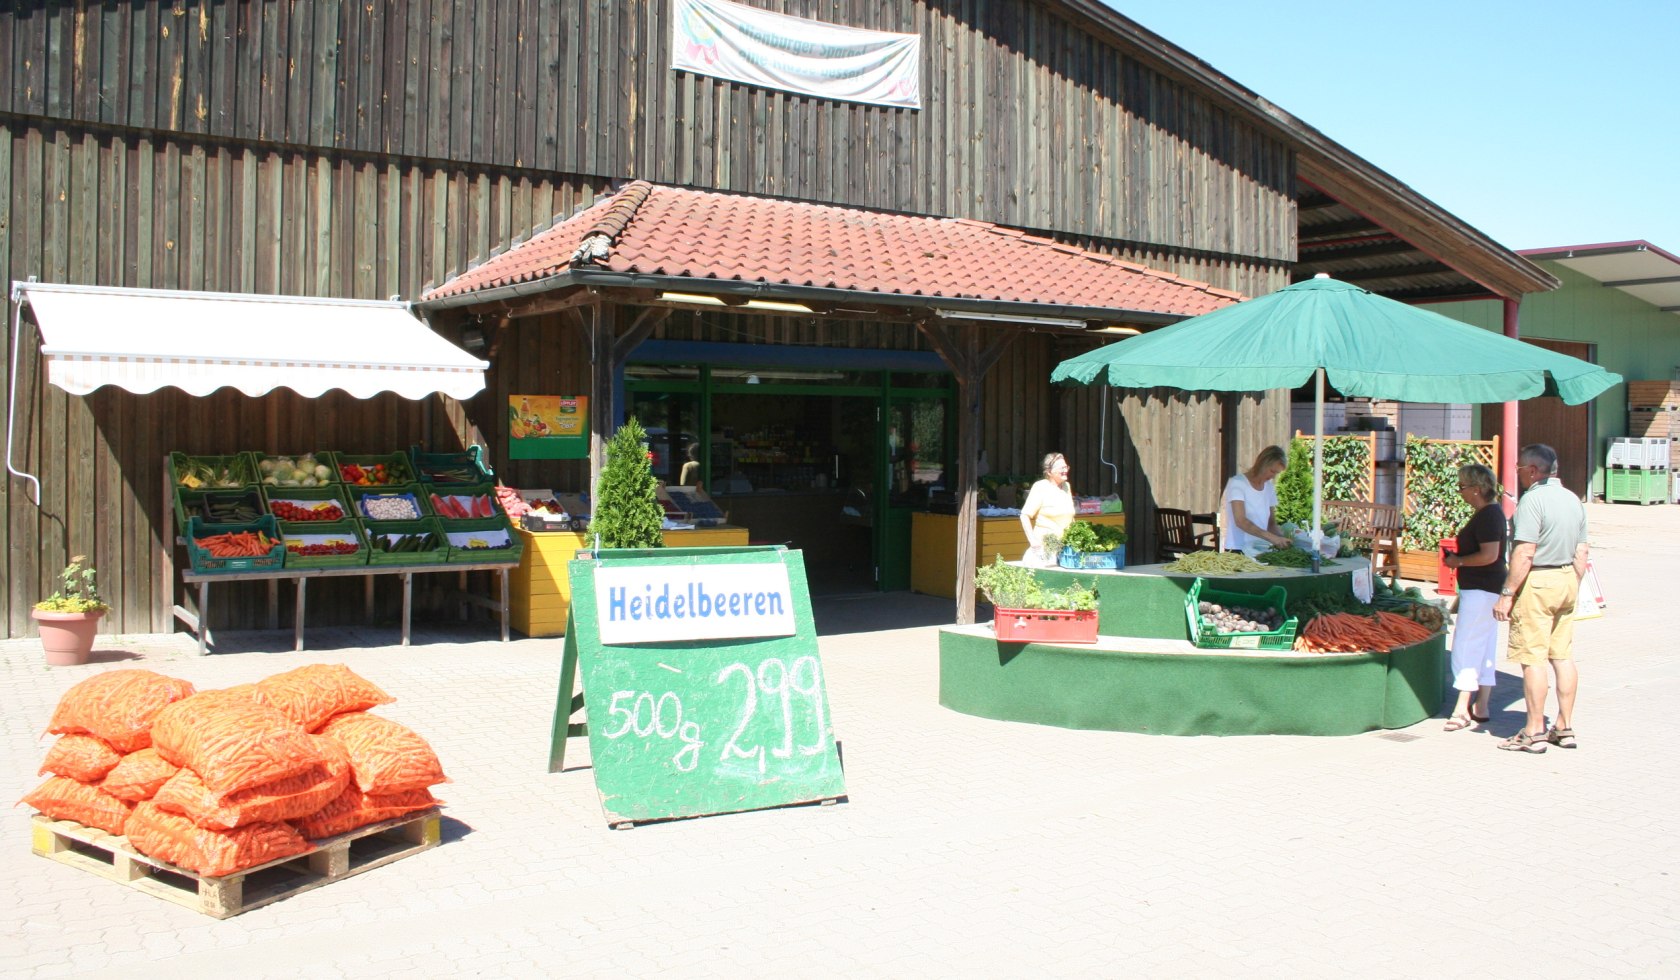 Boerderijwinkel met bosbessenverkoop in de Mittelweser regio, © Mittelweser Touristik GmbH